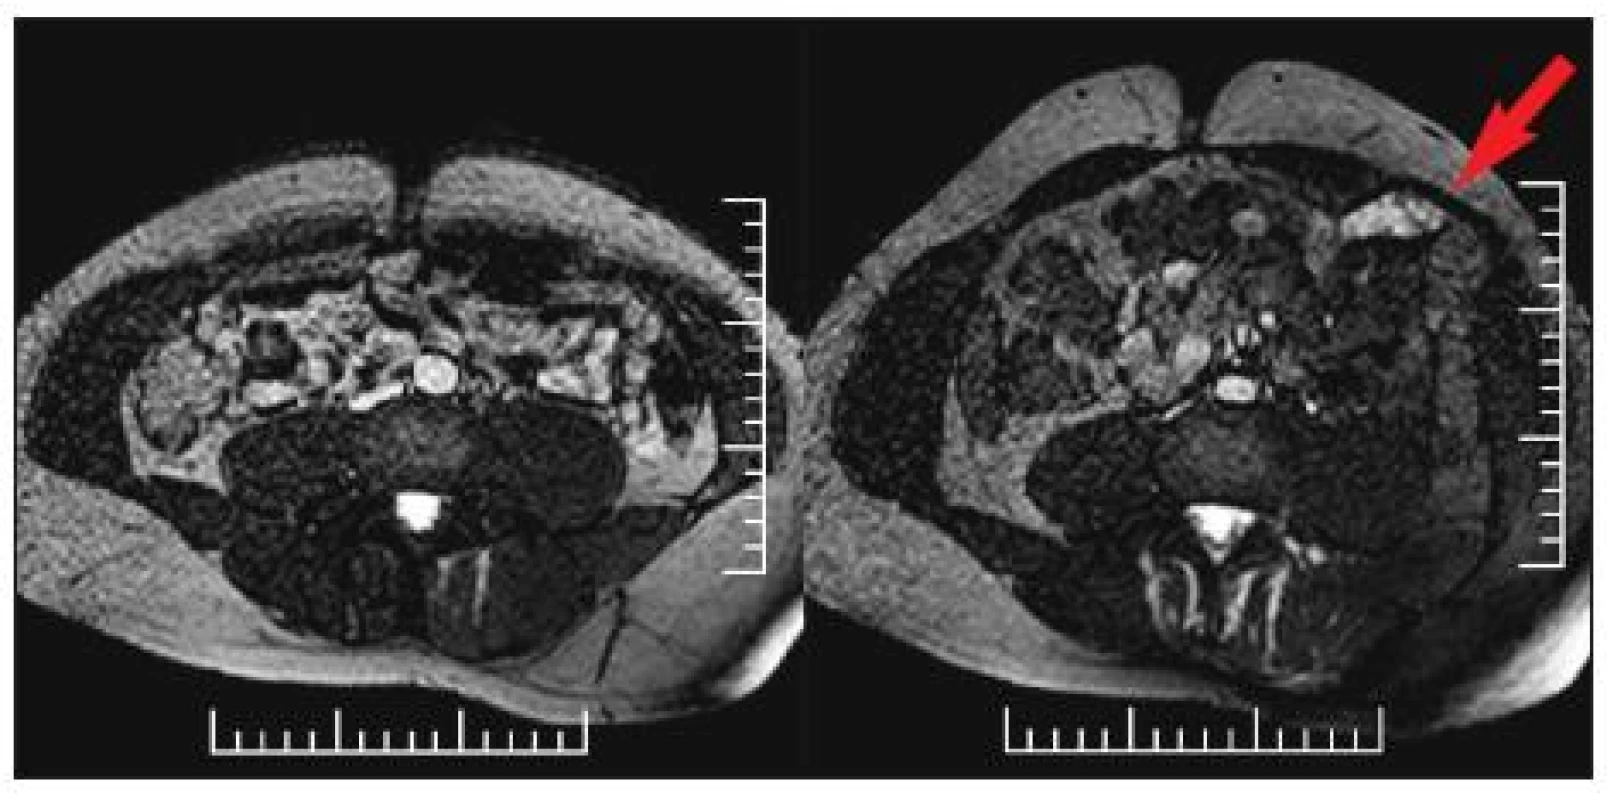  MRI břišní stěny (dynamické sekvence) u 38letého pacienta s pooperačním poškozením interkostálních nervů Th 10–11 vlevo. Na obrázku vlevo je nález v oblasti břišní stěny při klidném dýchání, kdy je nález na břišní stěně stranově symetrický, na obrázku vpravo je nález při Valsalvově manévru, kdy je patrné atrofické zeslabení a zřetelné vyklenování šikmých břišních svalů vlevo ve srovnání s pravou stranou.